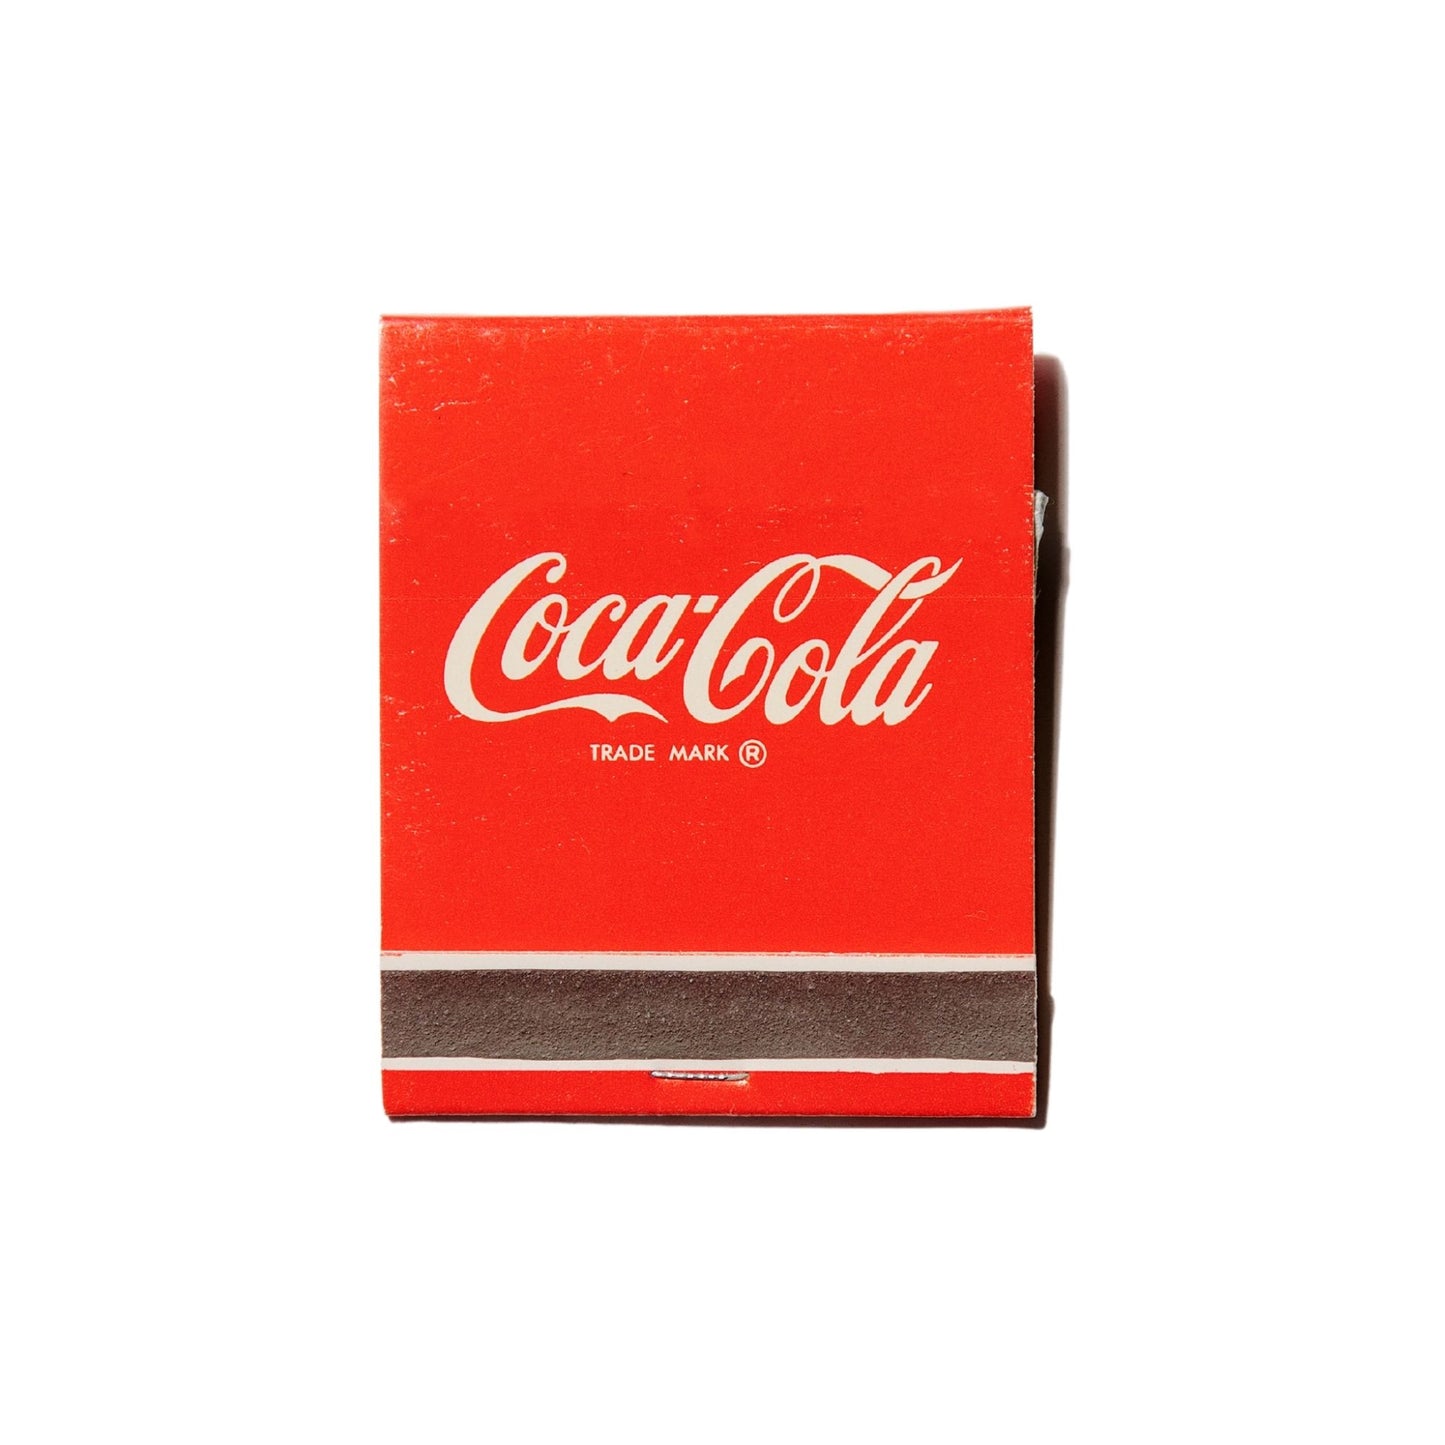 Coca-Cola (Vintage)